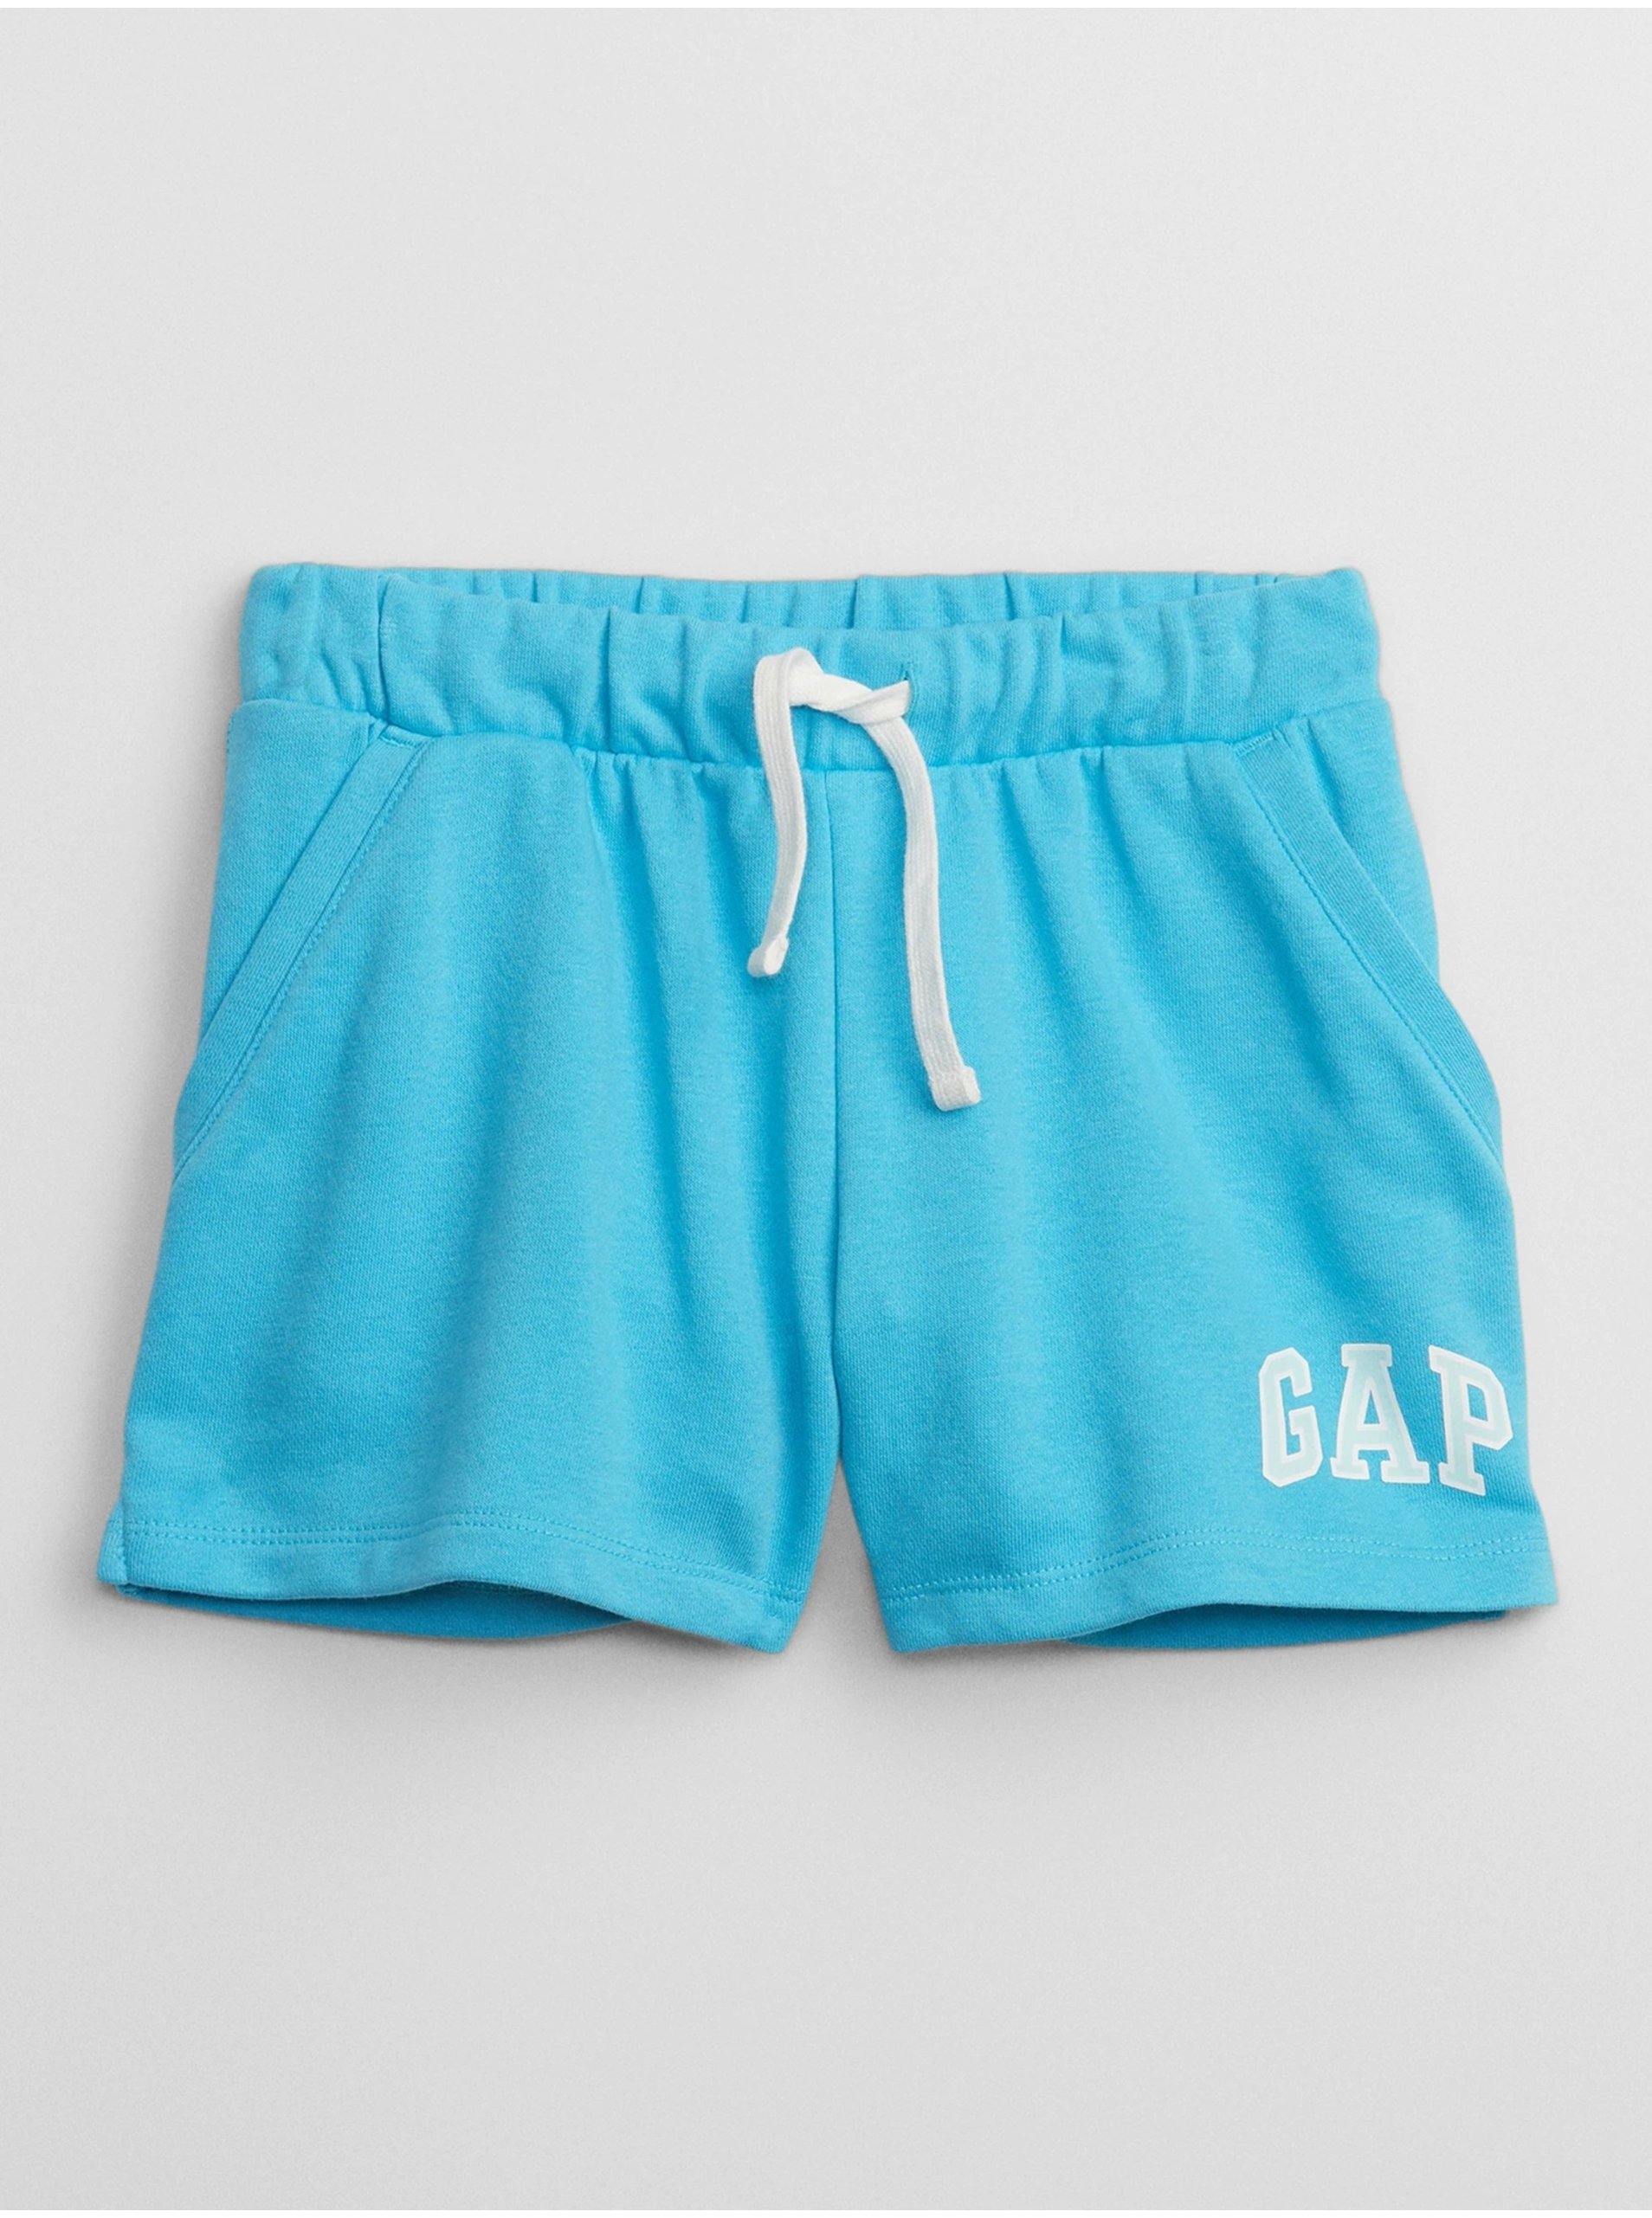 Lacno Modré dievčenské šortky s logom GAP